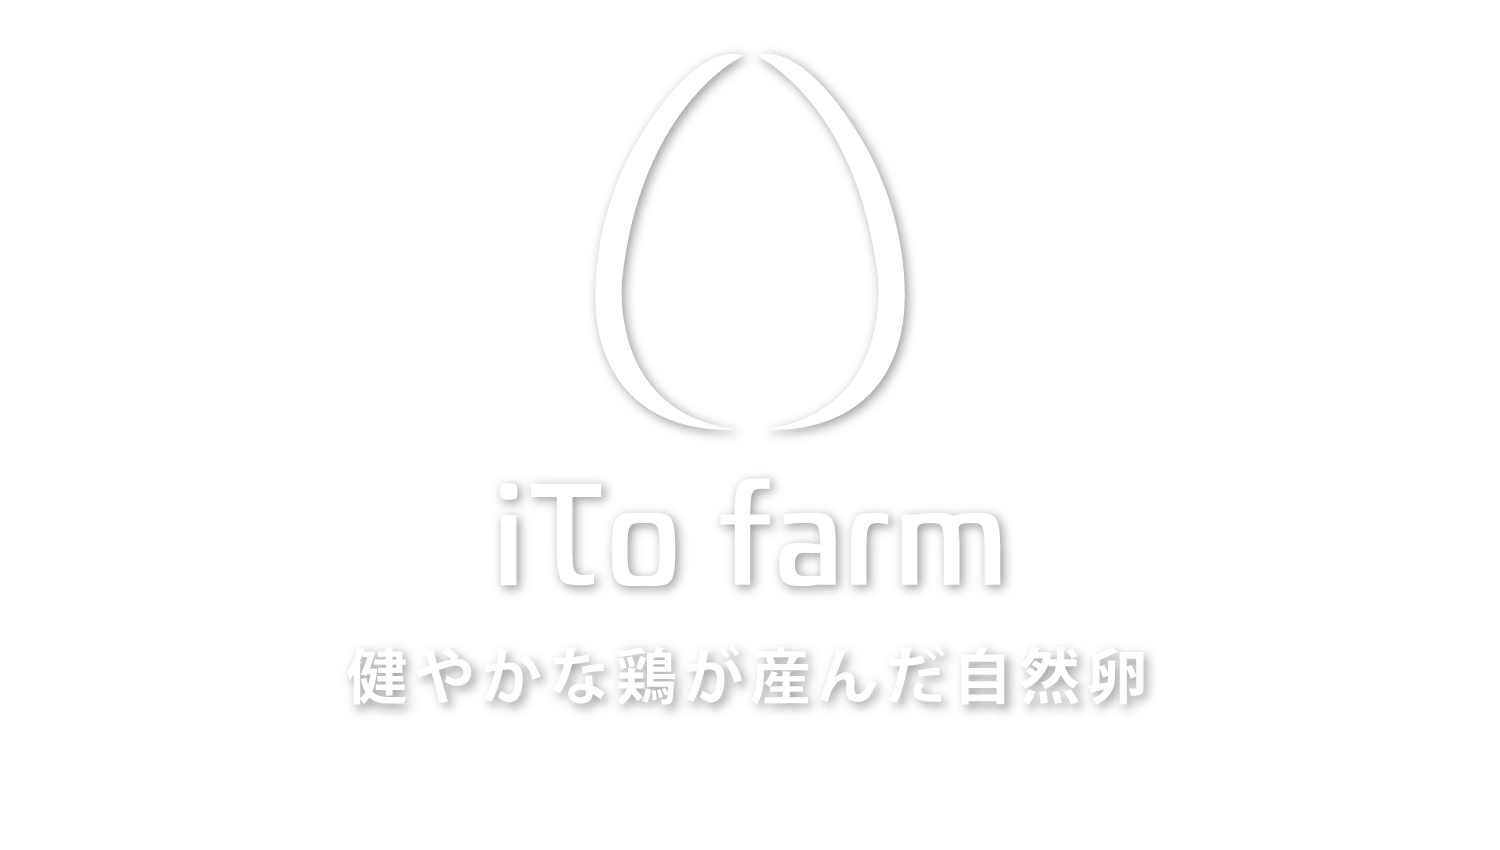 iTo farm 伊藤ファーム